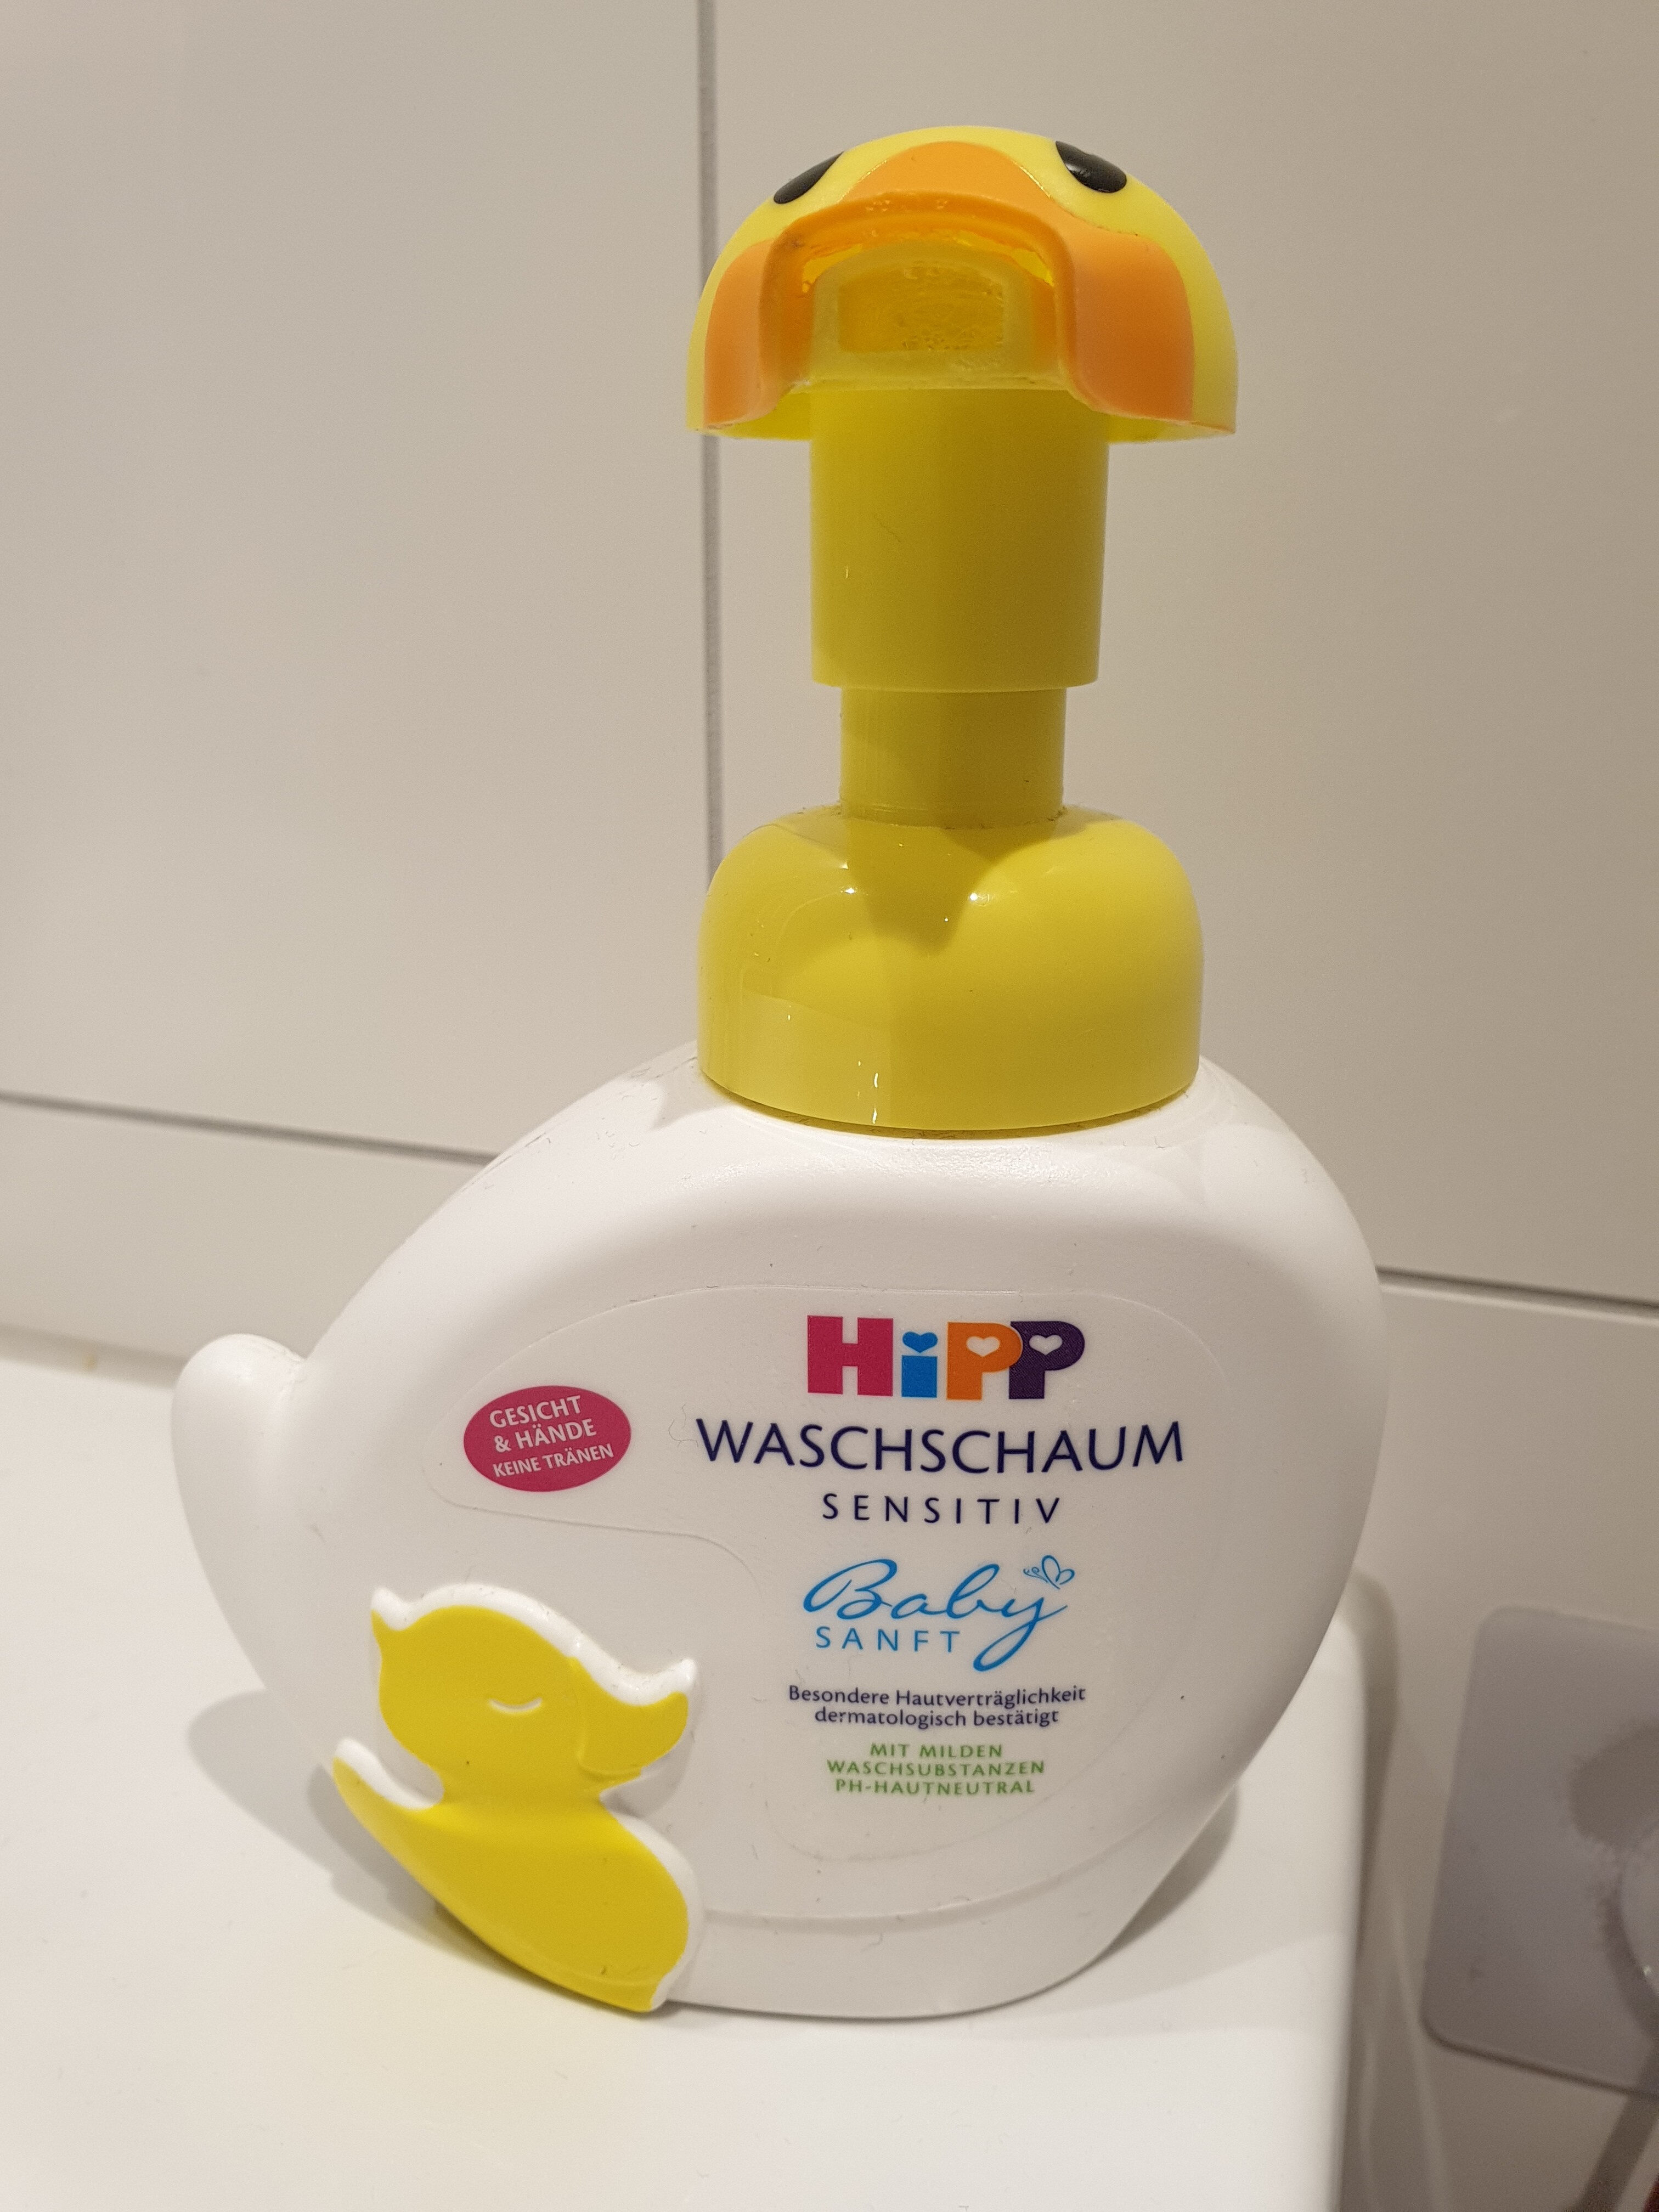 Hipp Waschschaum sensitiv - Product - de